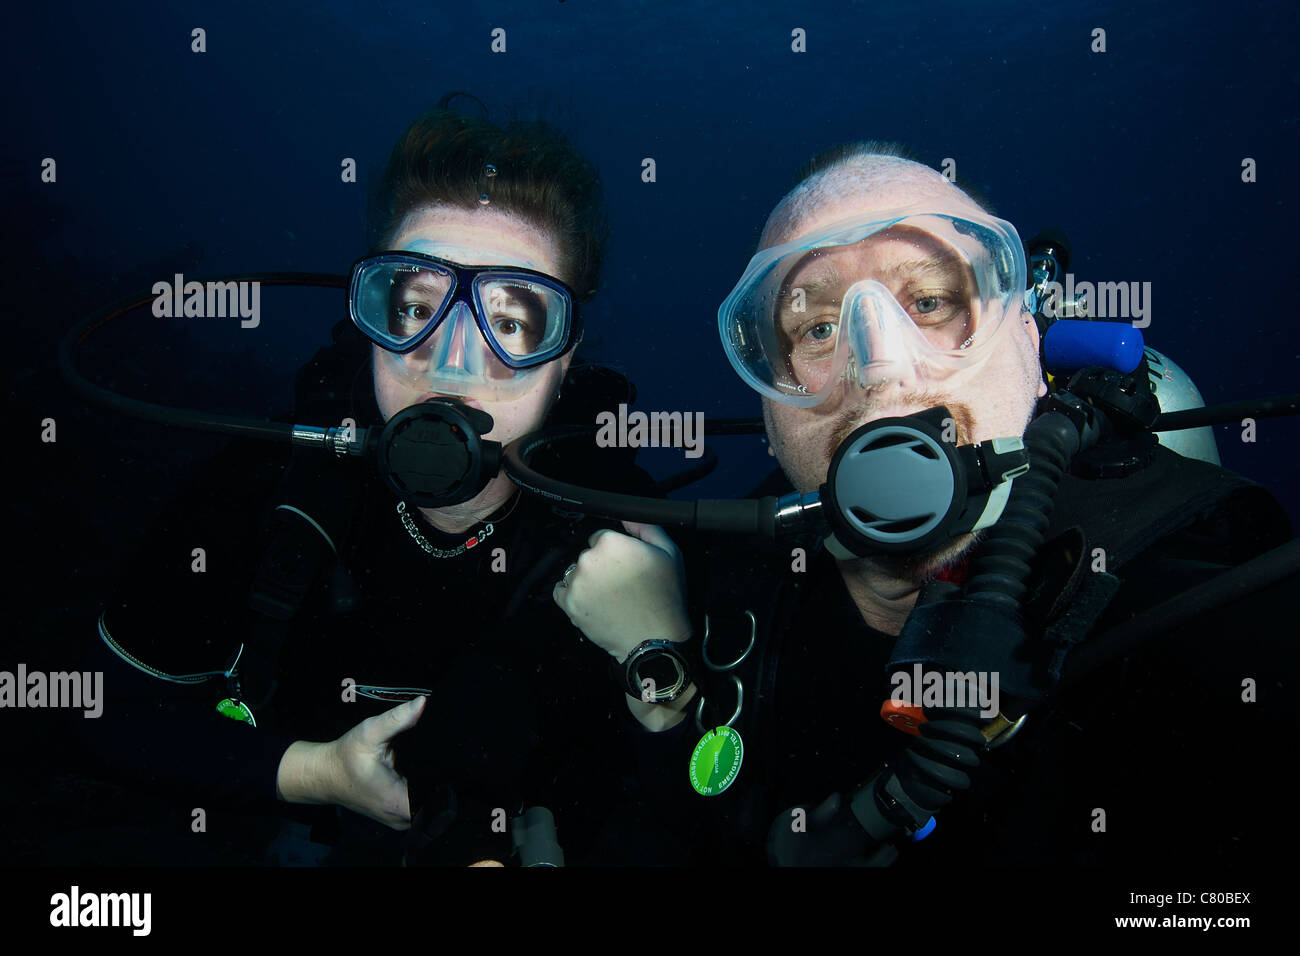 Les plongeurs autonomes pose devant l'appareil photo sous l'eau, Bonaire, des Caraïbes aux Pays-Bas. Banque D'Images